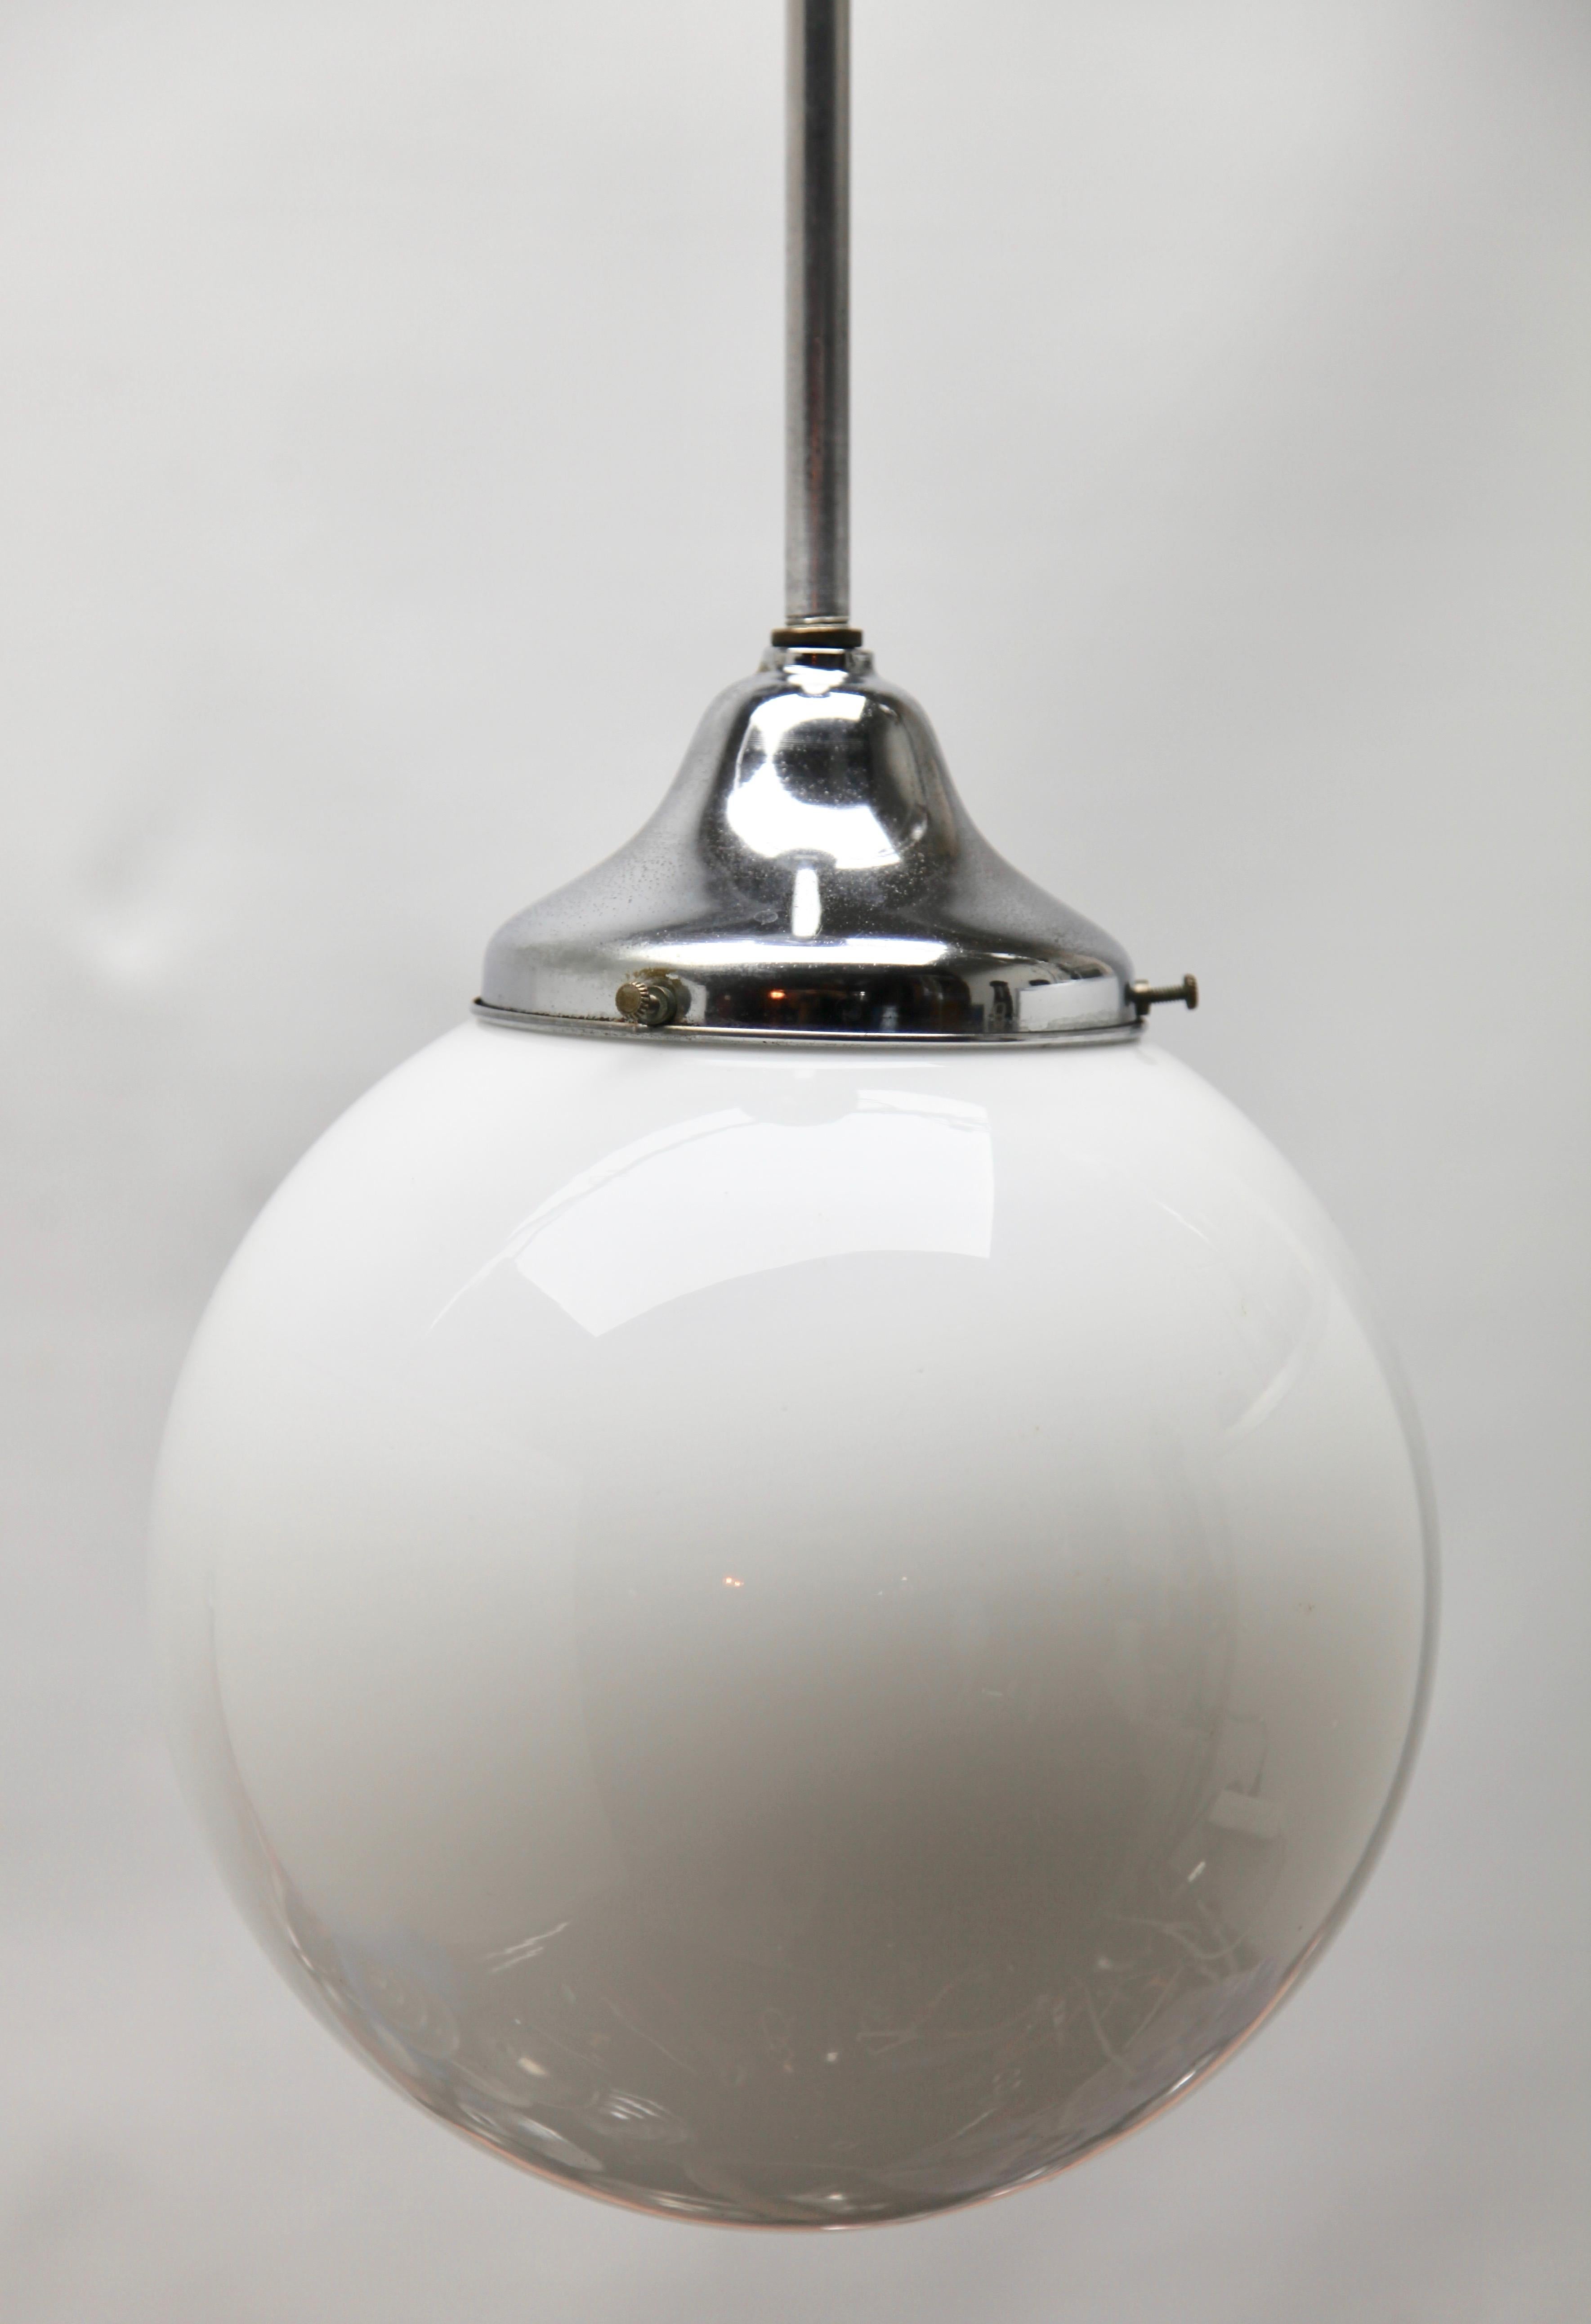 Issue de la gamme de la société Phillips, cette lampe de centre sur une tige centrale chromée. La lampe a une armature sur une plaque chromée et contient un abat-jour rond et globulaire en verre opalin.

En bon état et en parfait état de